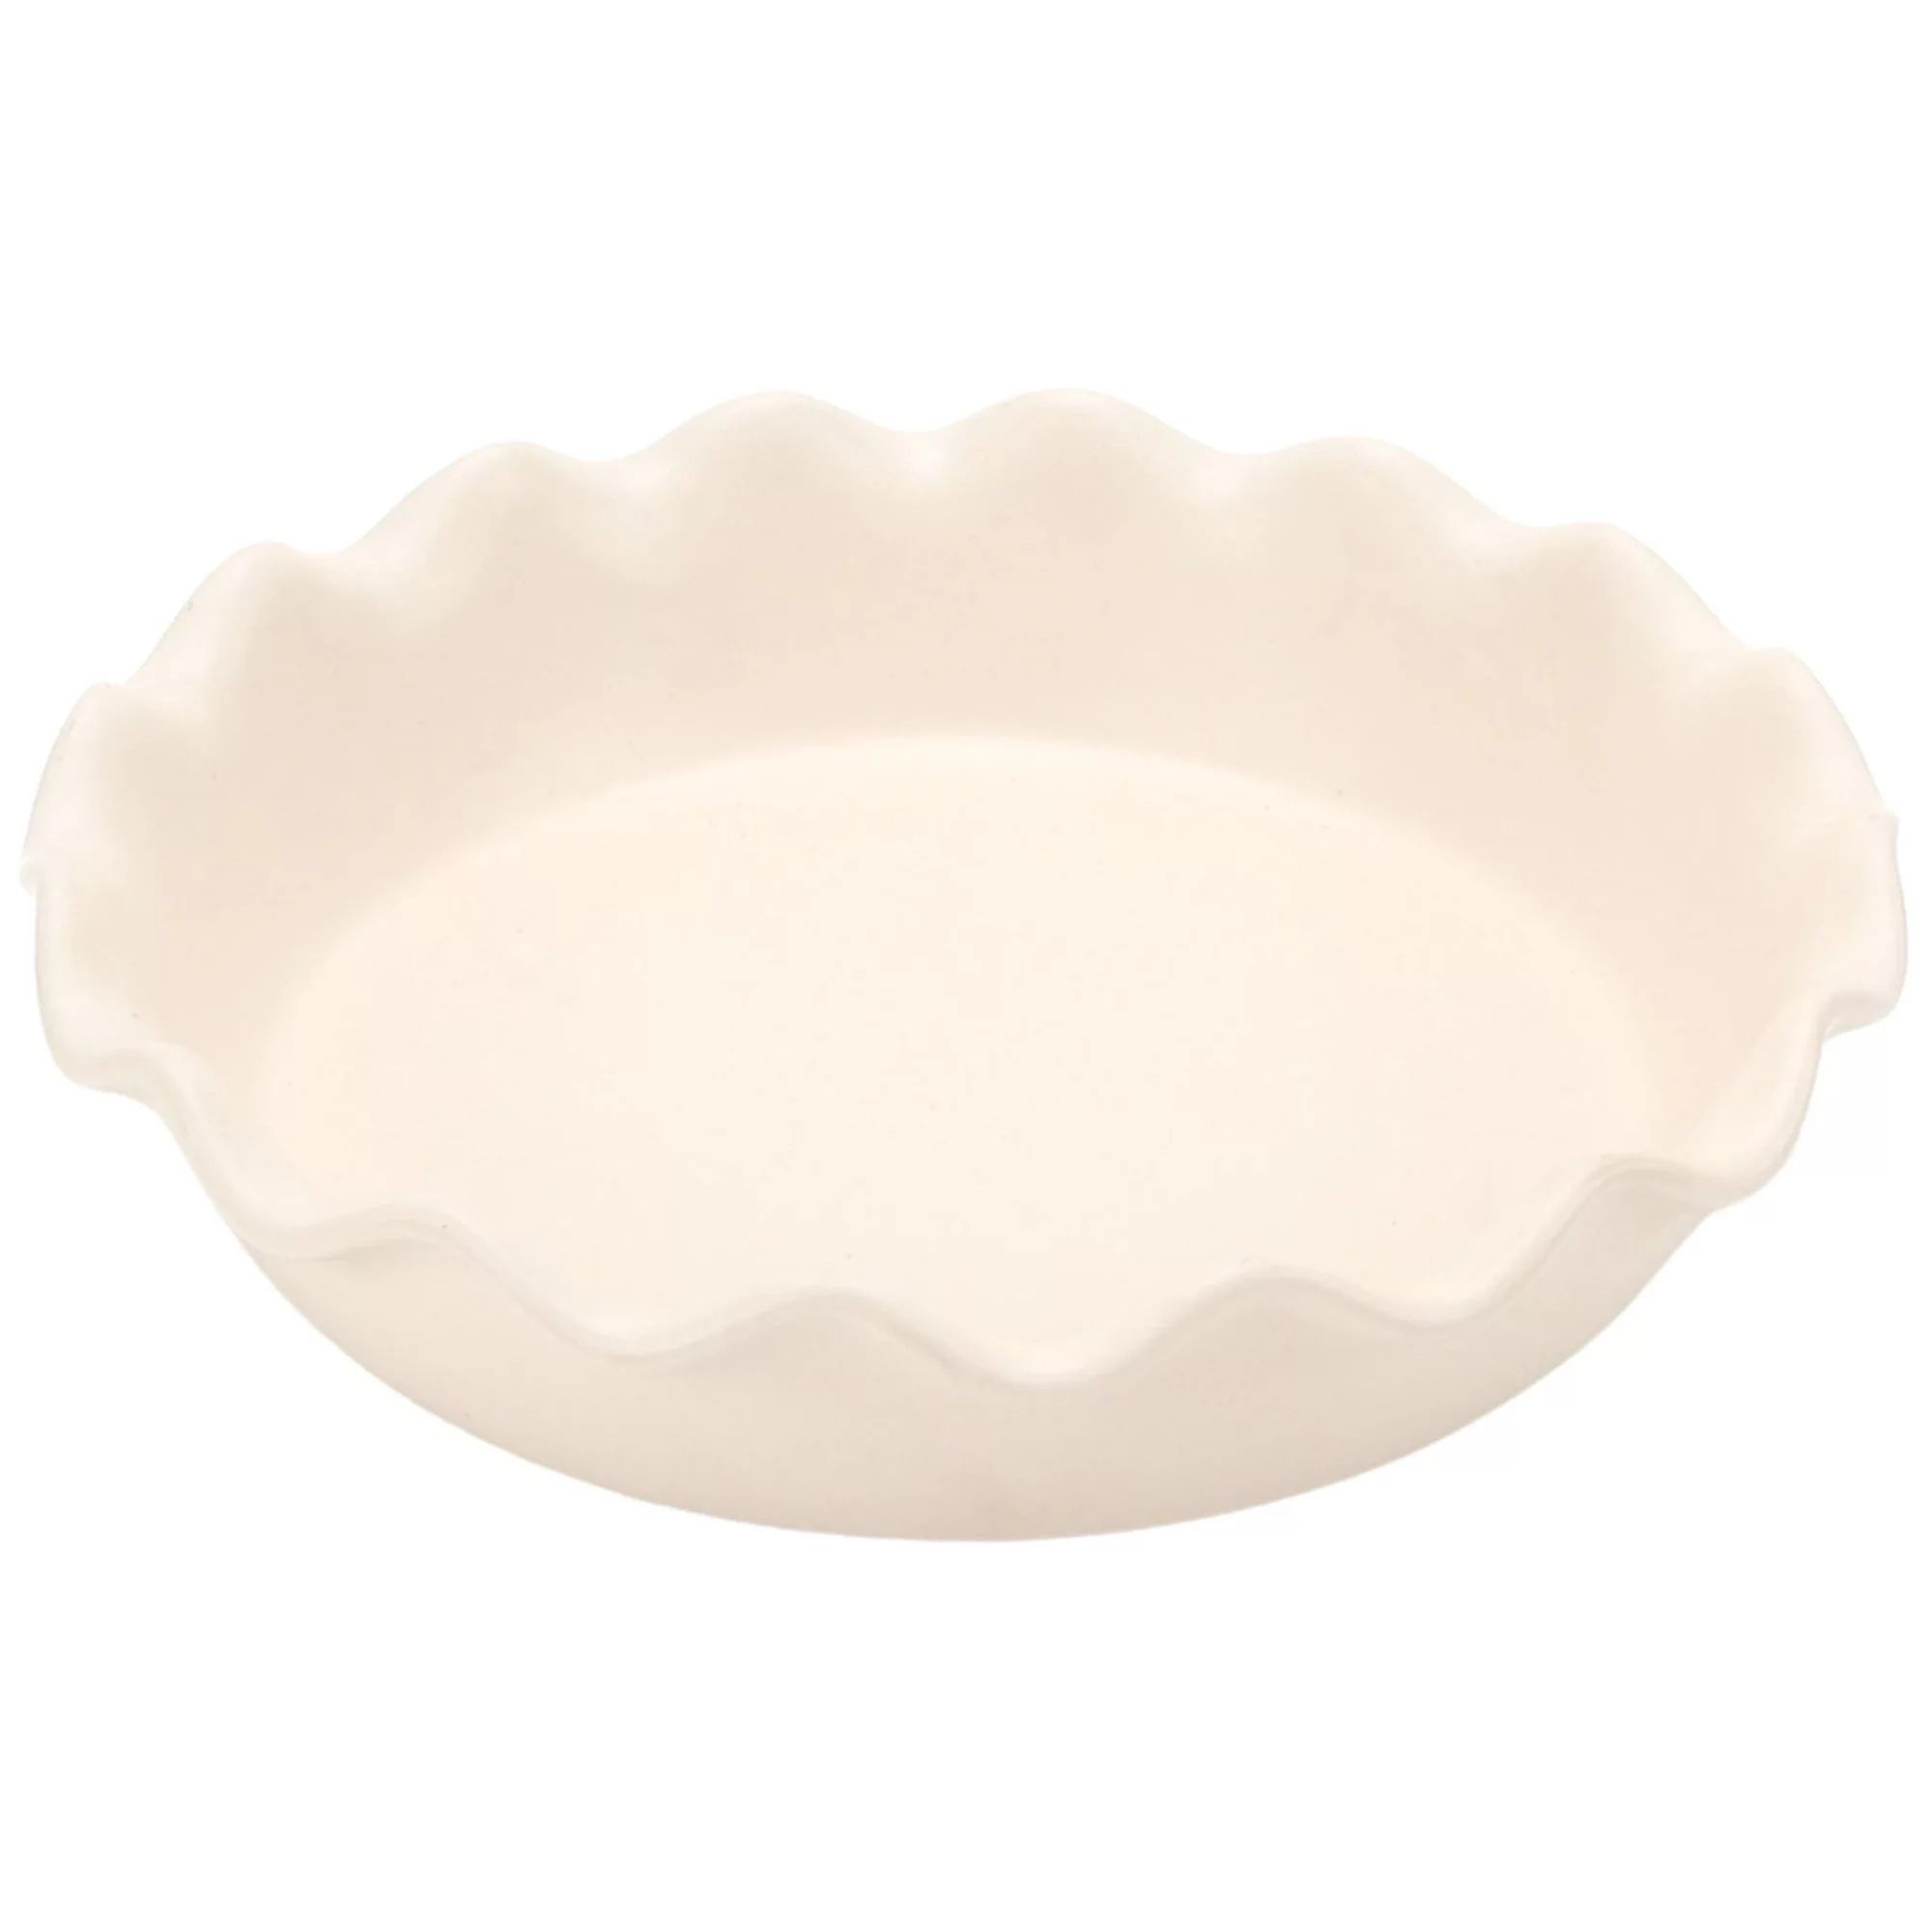 Just Feed Me by Jessie James Decker Ceramic Round Pie Pan, Cream | Walmart (US)